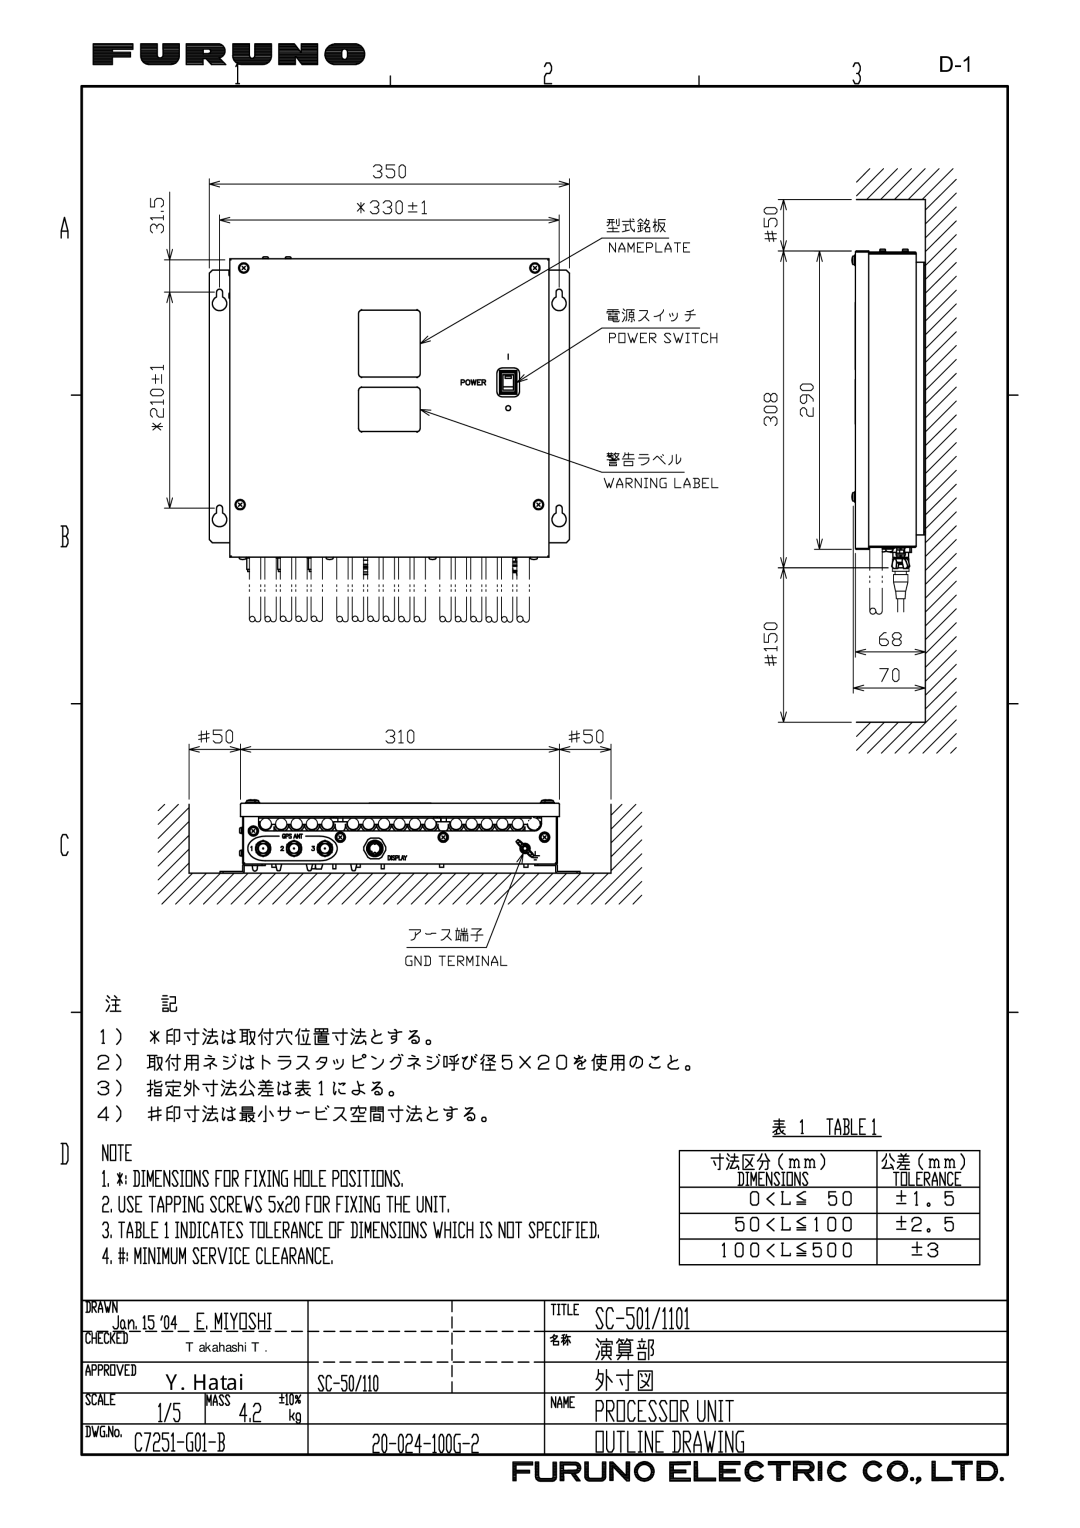 Furuno SC-110 manual Y. Hatai 